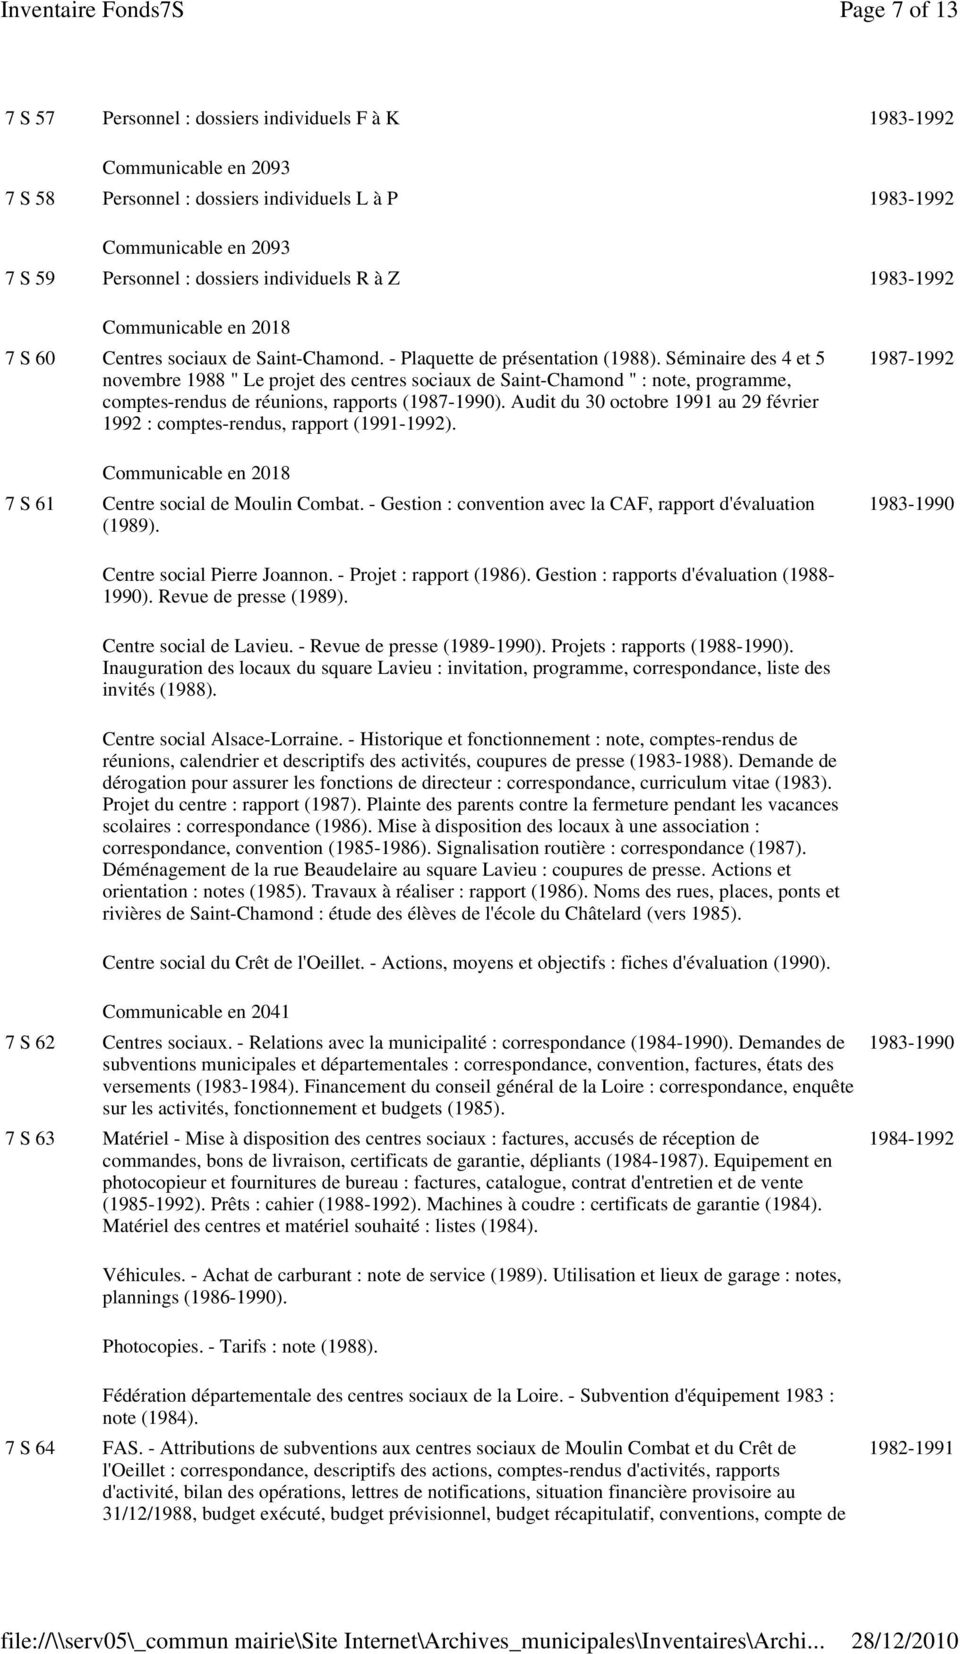 Séminaire des 4 et 5 novembre 1988 " Le projet des centres sociaux de Saint-Chamond " : note, programme, comptes-rendus de réunions, rapports (1987-1990).